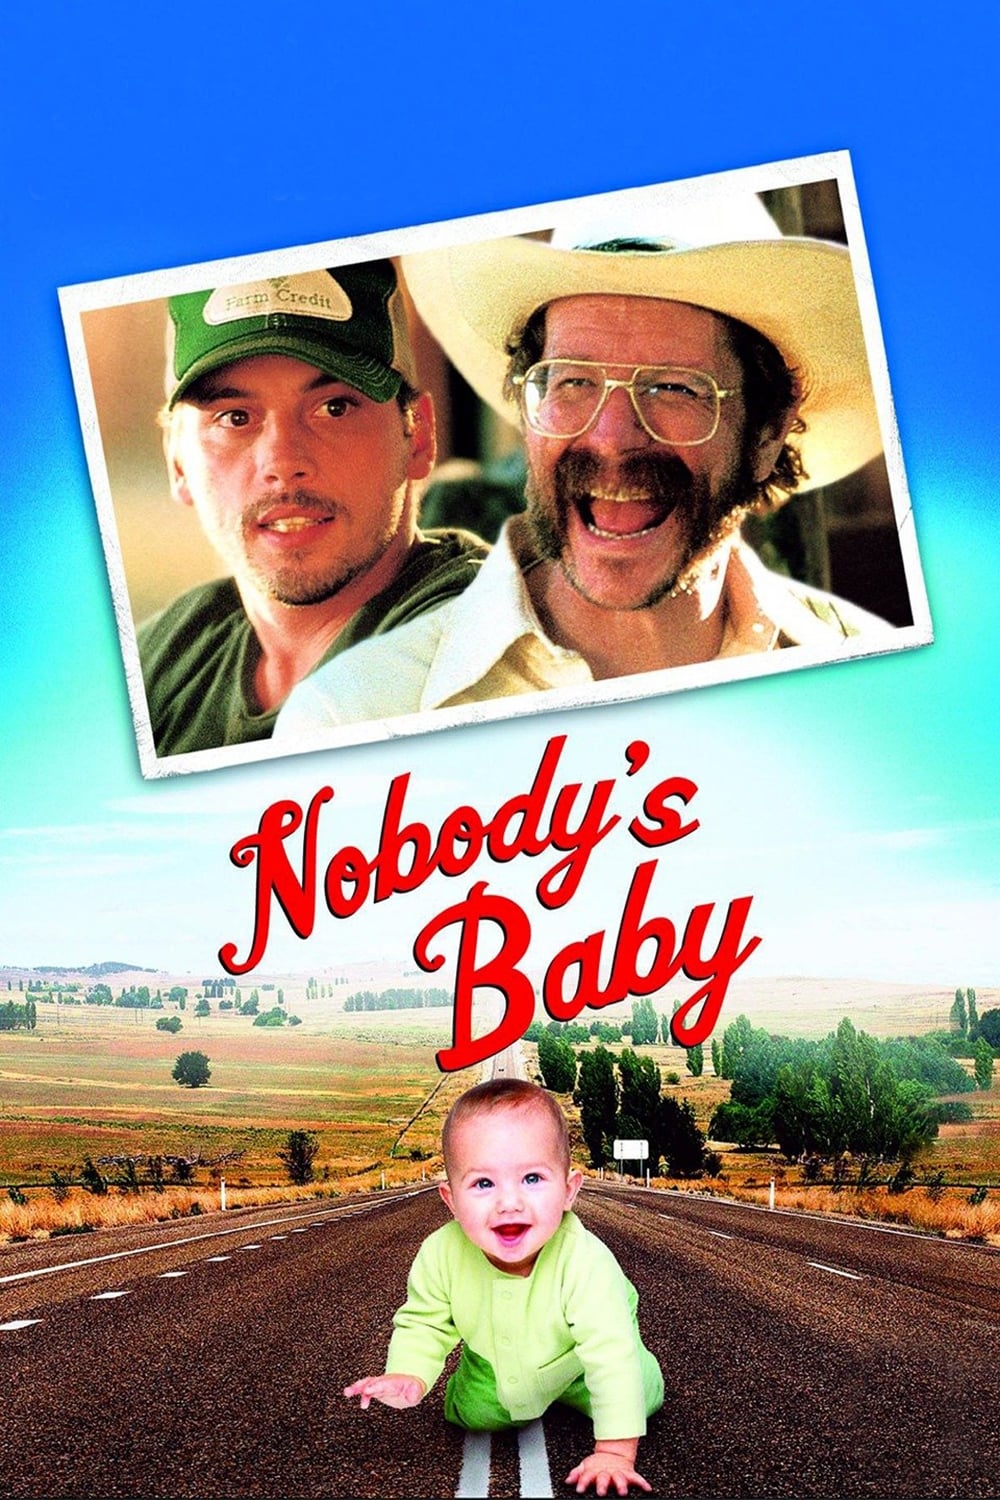 Nobody's Baby (2001)